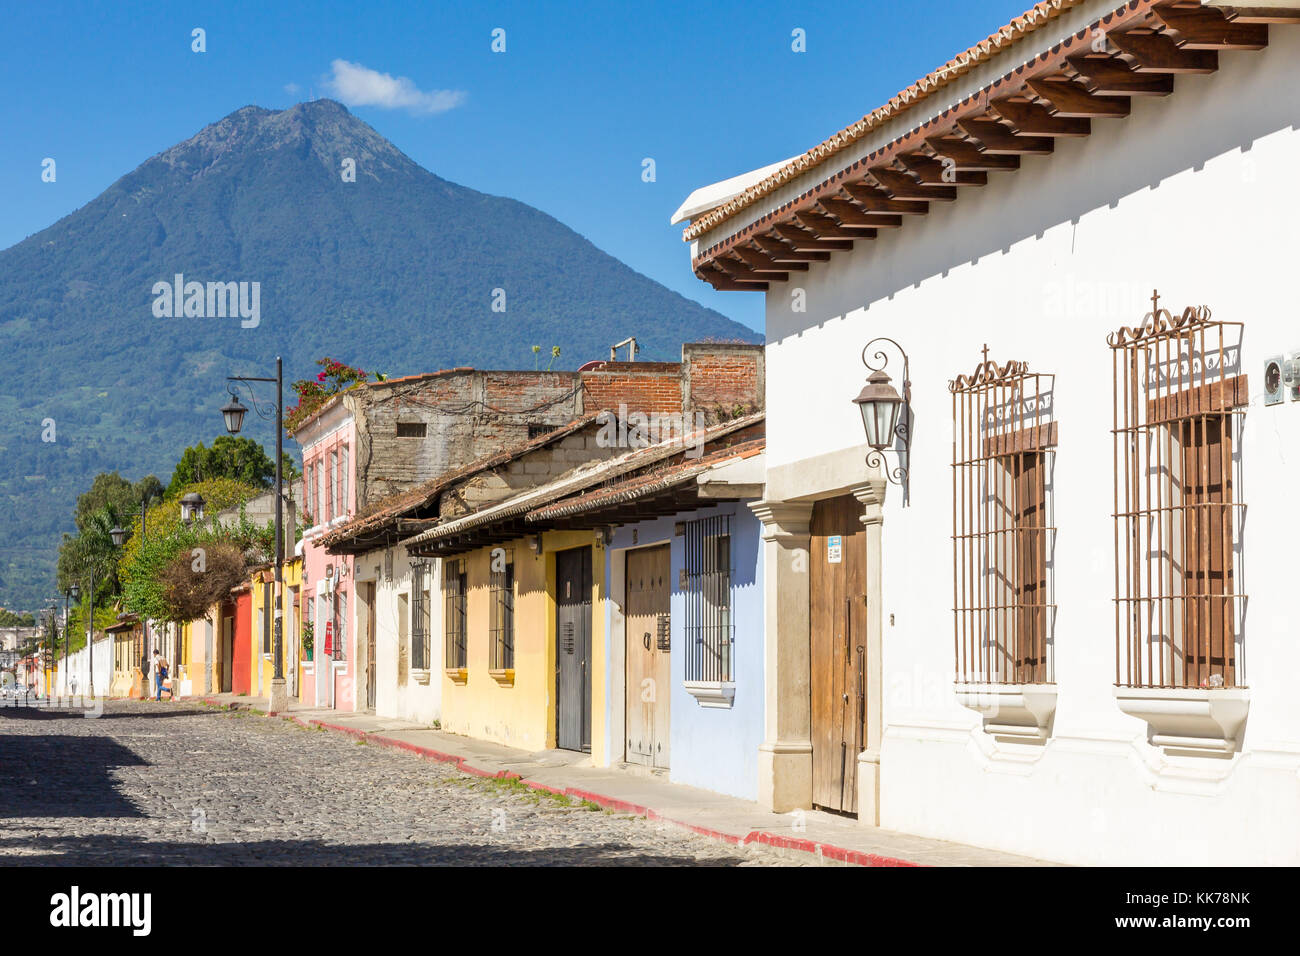 Casas coloniales y Volcán de agua | Antigua | Guatemala Foto de stock